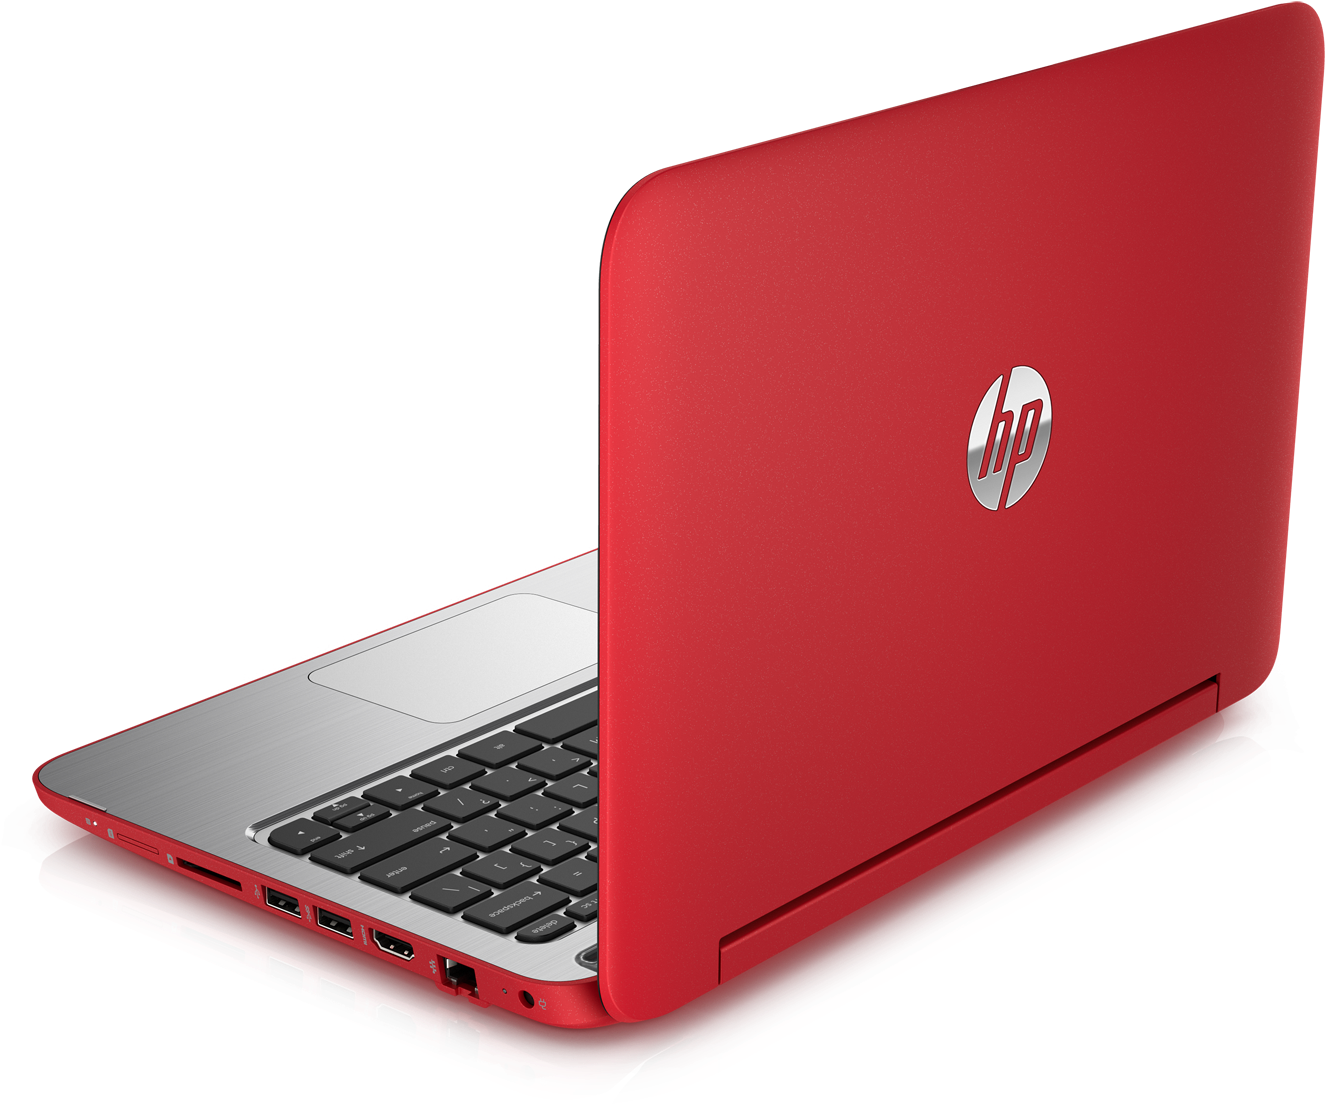 Hp Laptop Png Pic - Hp Beats Pavilion Laptop Clipart (1600x1200), Png Download